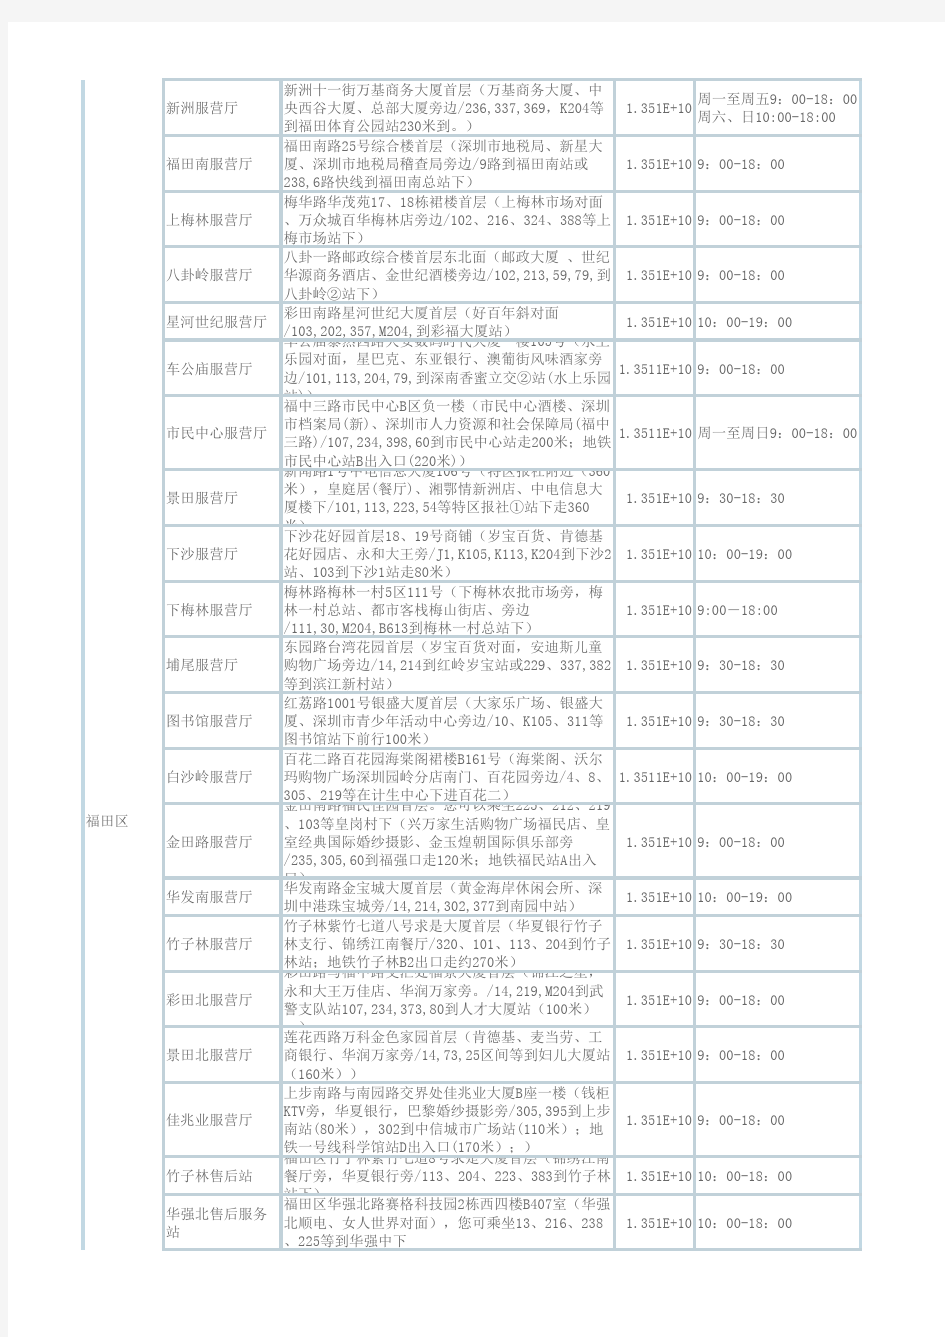 深圳移动沟通100服务厅地址汇总表